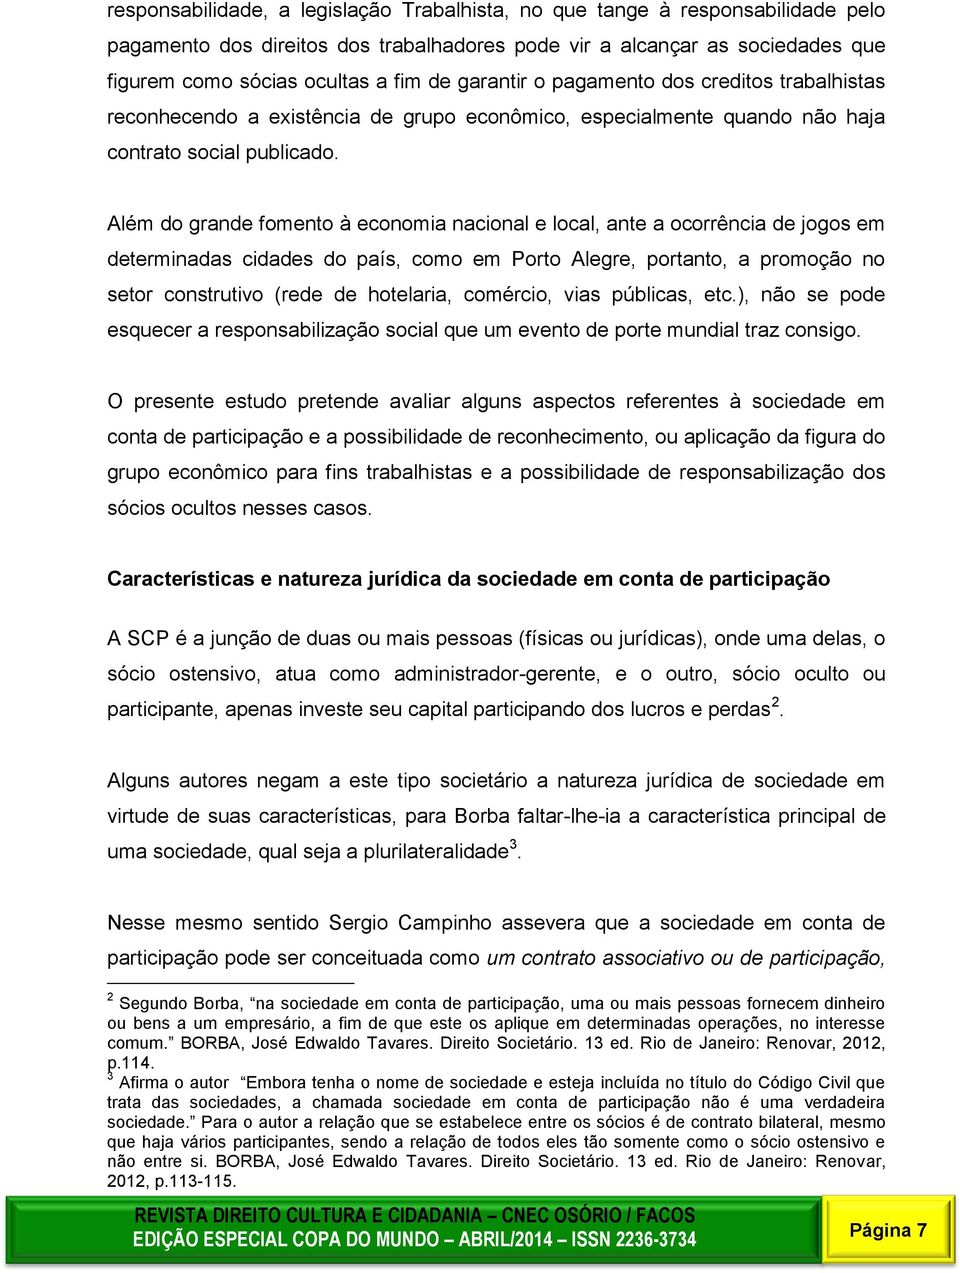 local, ante a ocorrência de jogos em determinadas cidades do país, como em Porto Alegre, portanto, a promoção no setor construtivo (rede de hotelaria, comércio, vias públicas, etc), não se pode